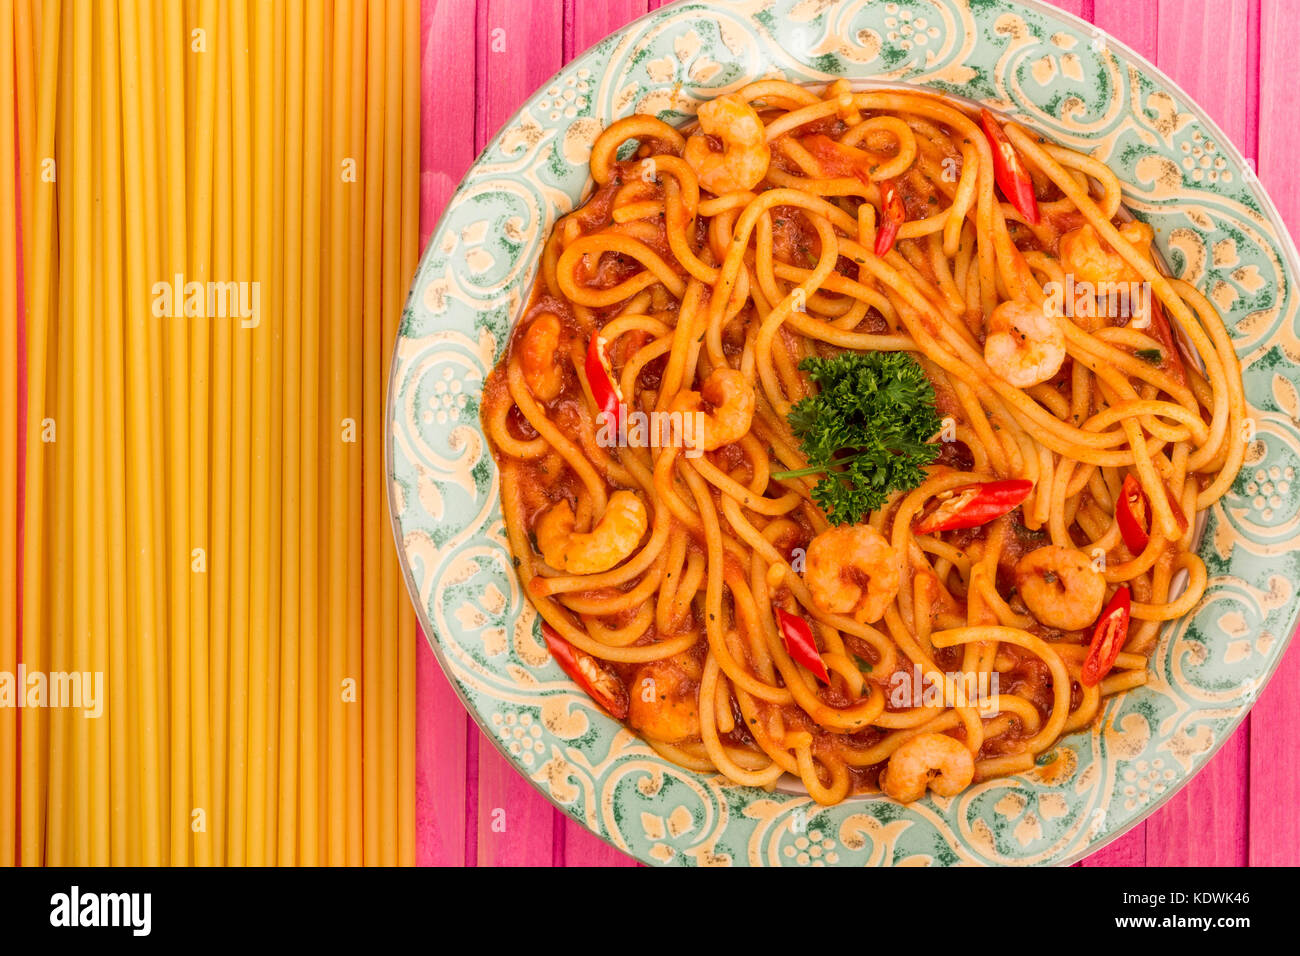 Crevettes épicées à l'italienne ou les crevettes spaghetti dans un piment sauce tomate sur un fond de bois de rose Banque D'Images